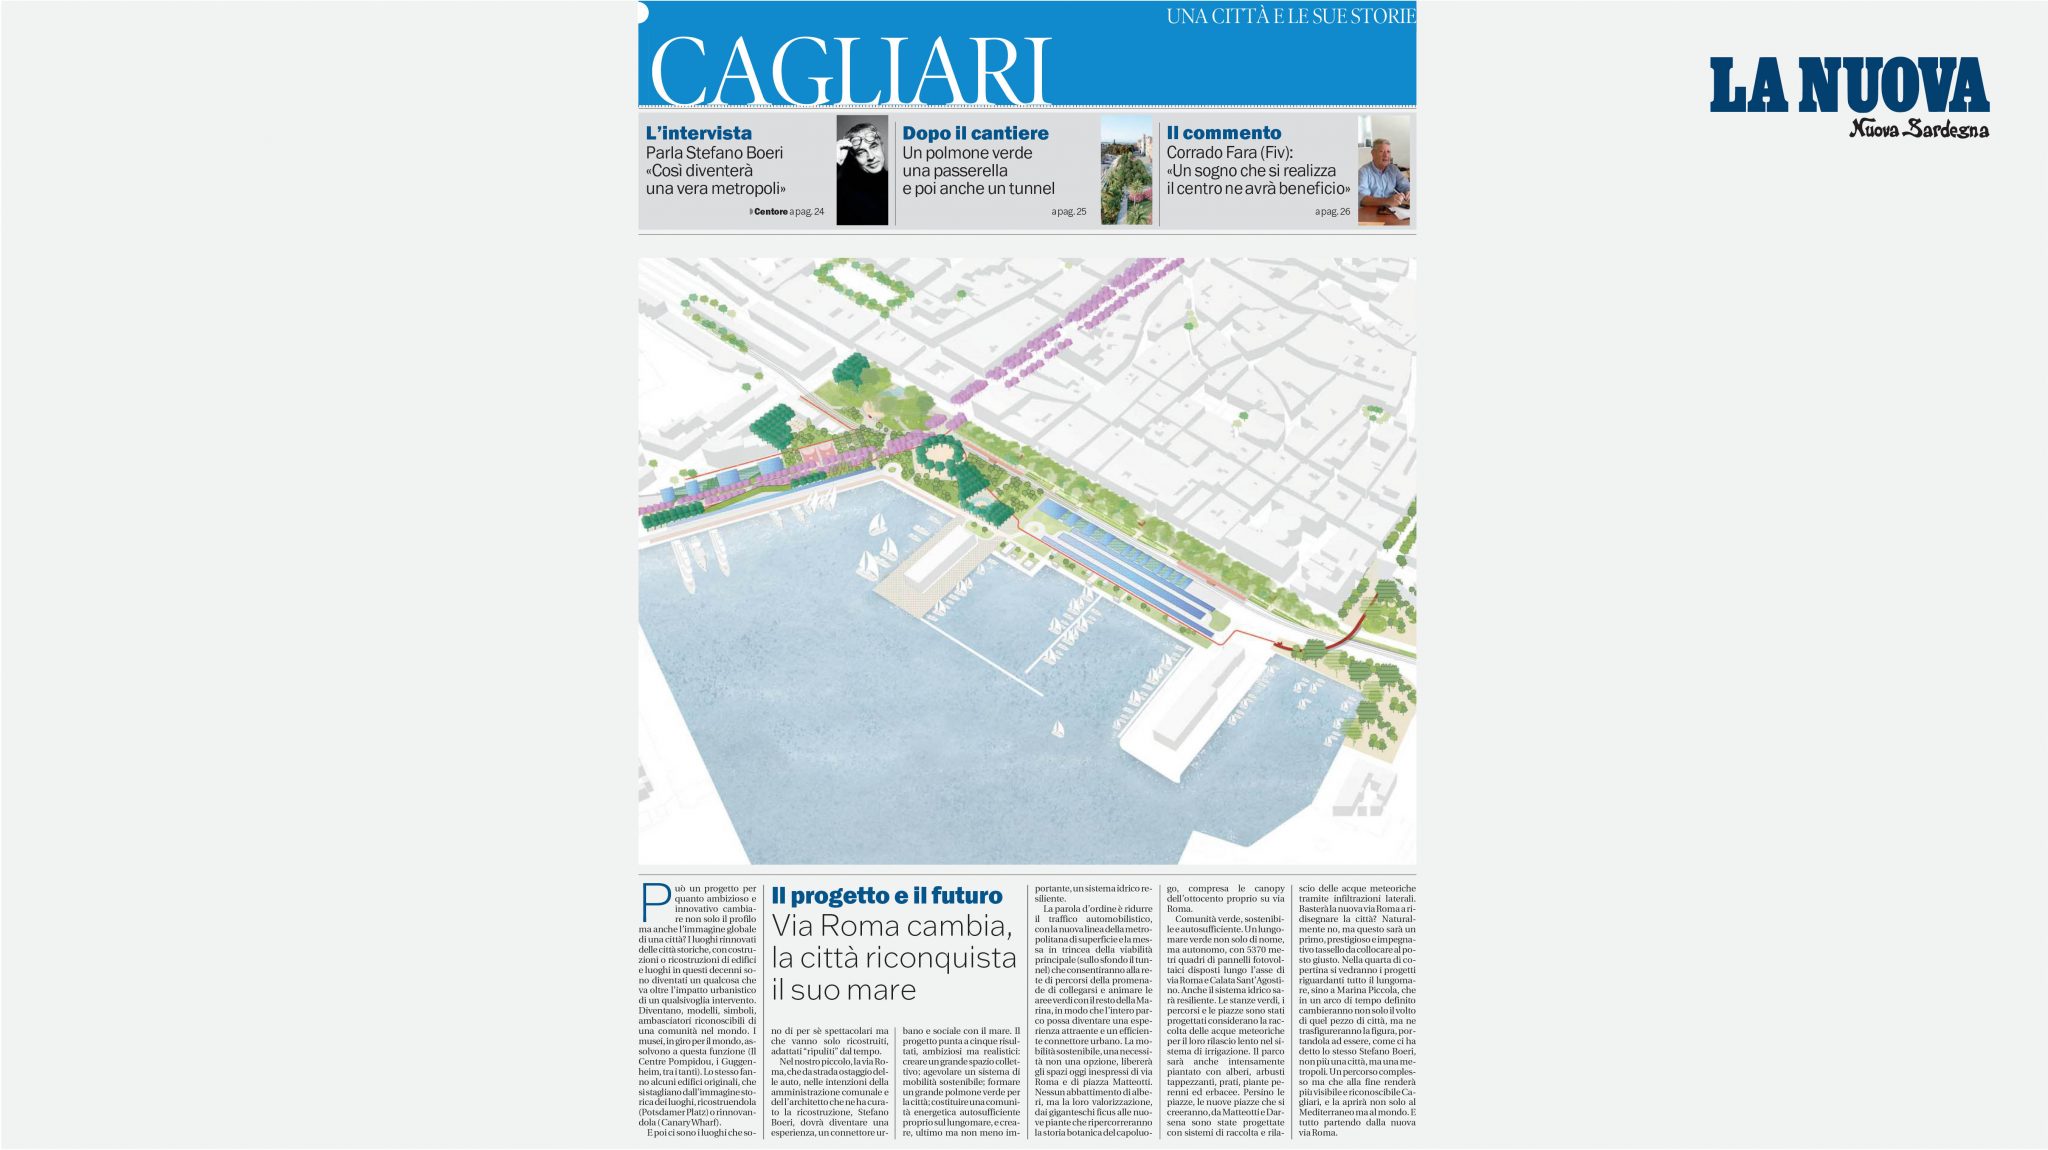 Lungomare di Cagliari su La Nuova Sardegna